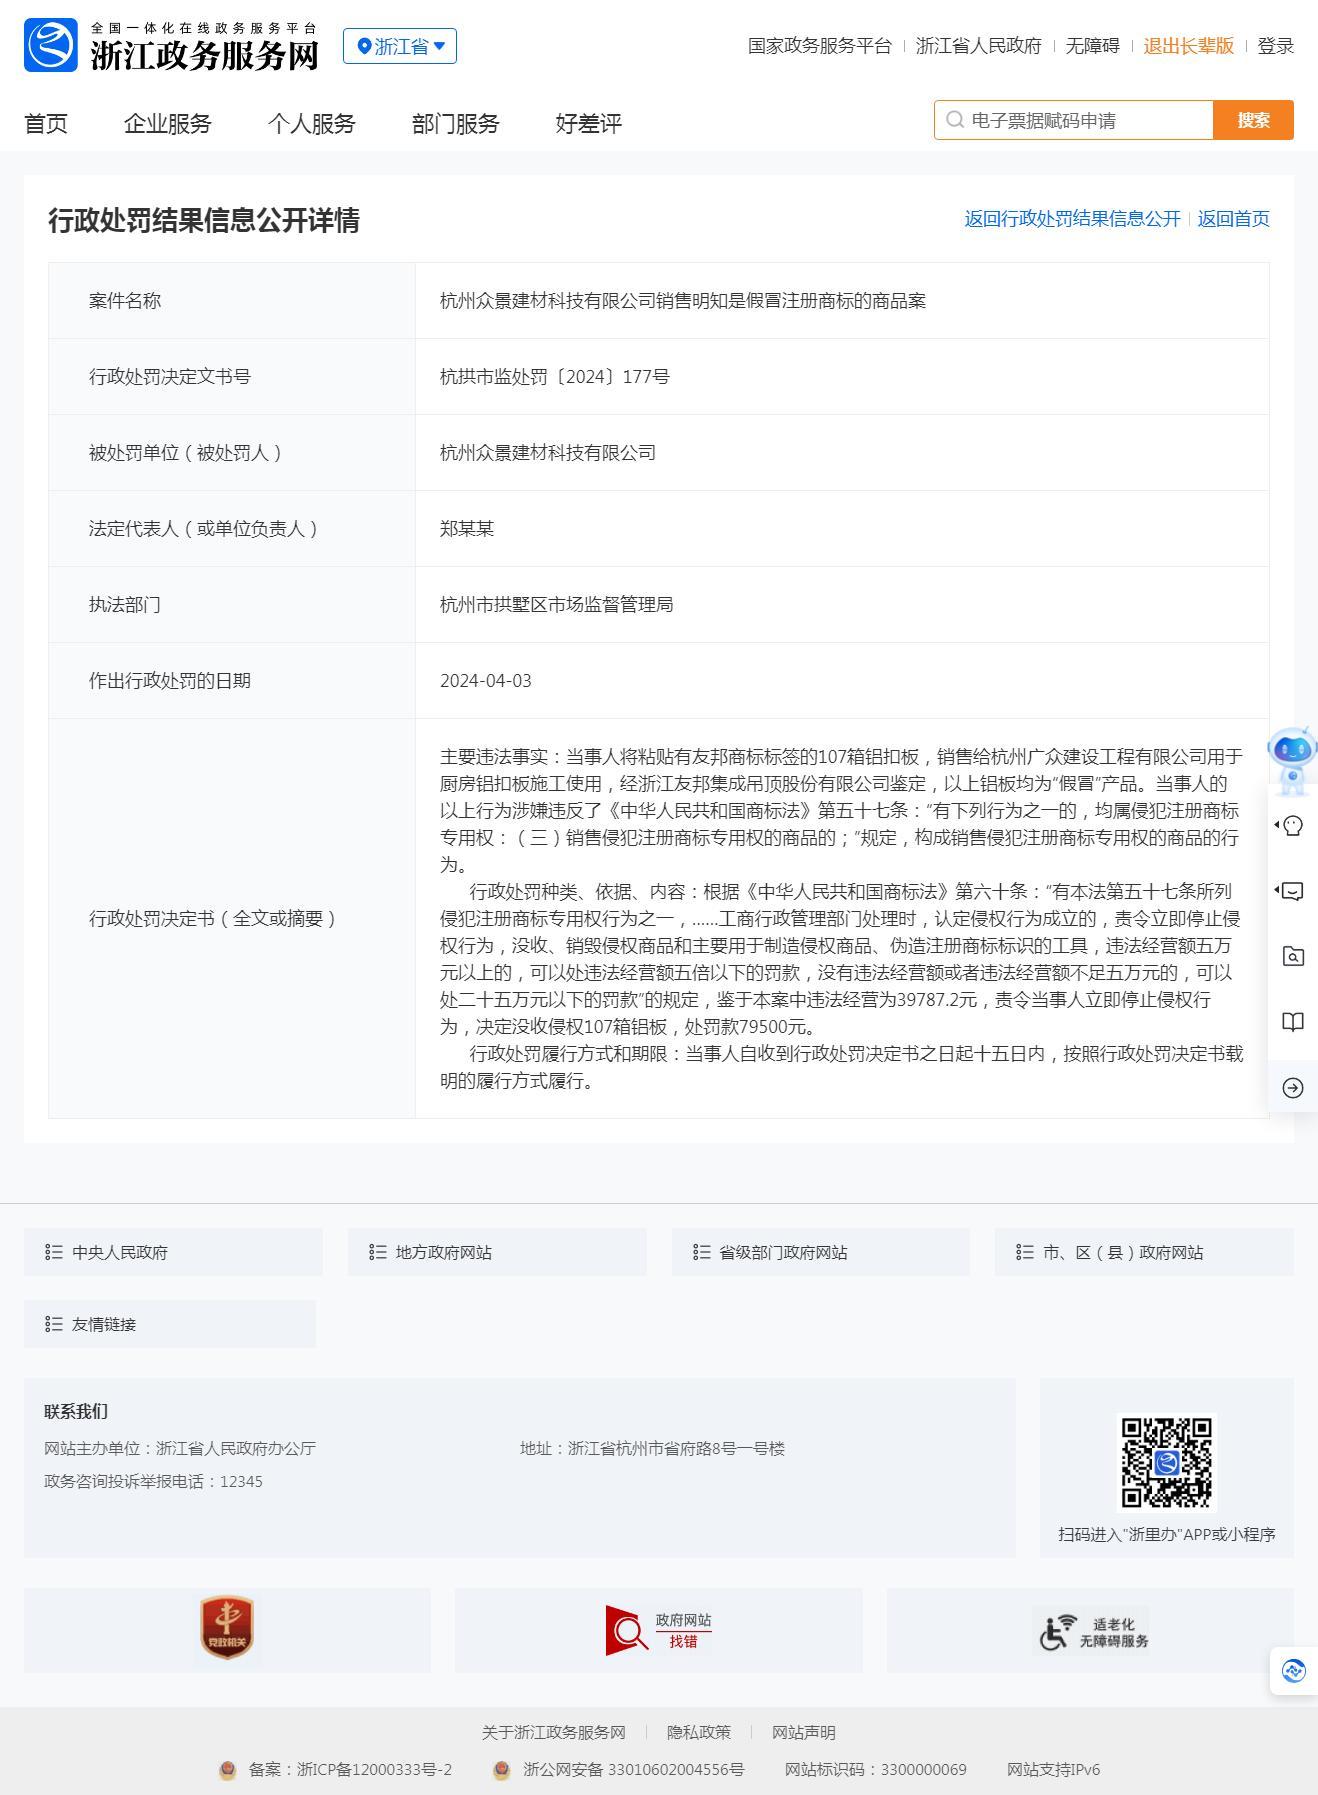 杭州众景建材科技有限公司销售明知是假冒注册商标的商品被罚7.9万元